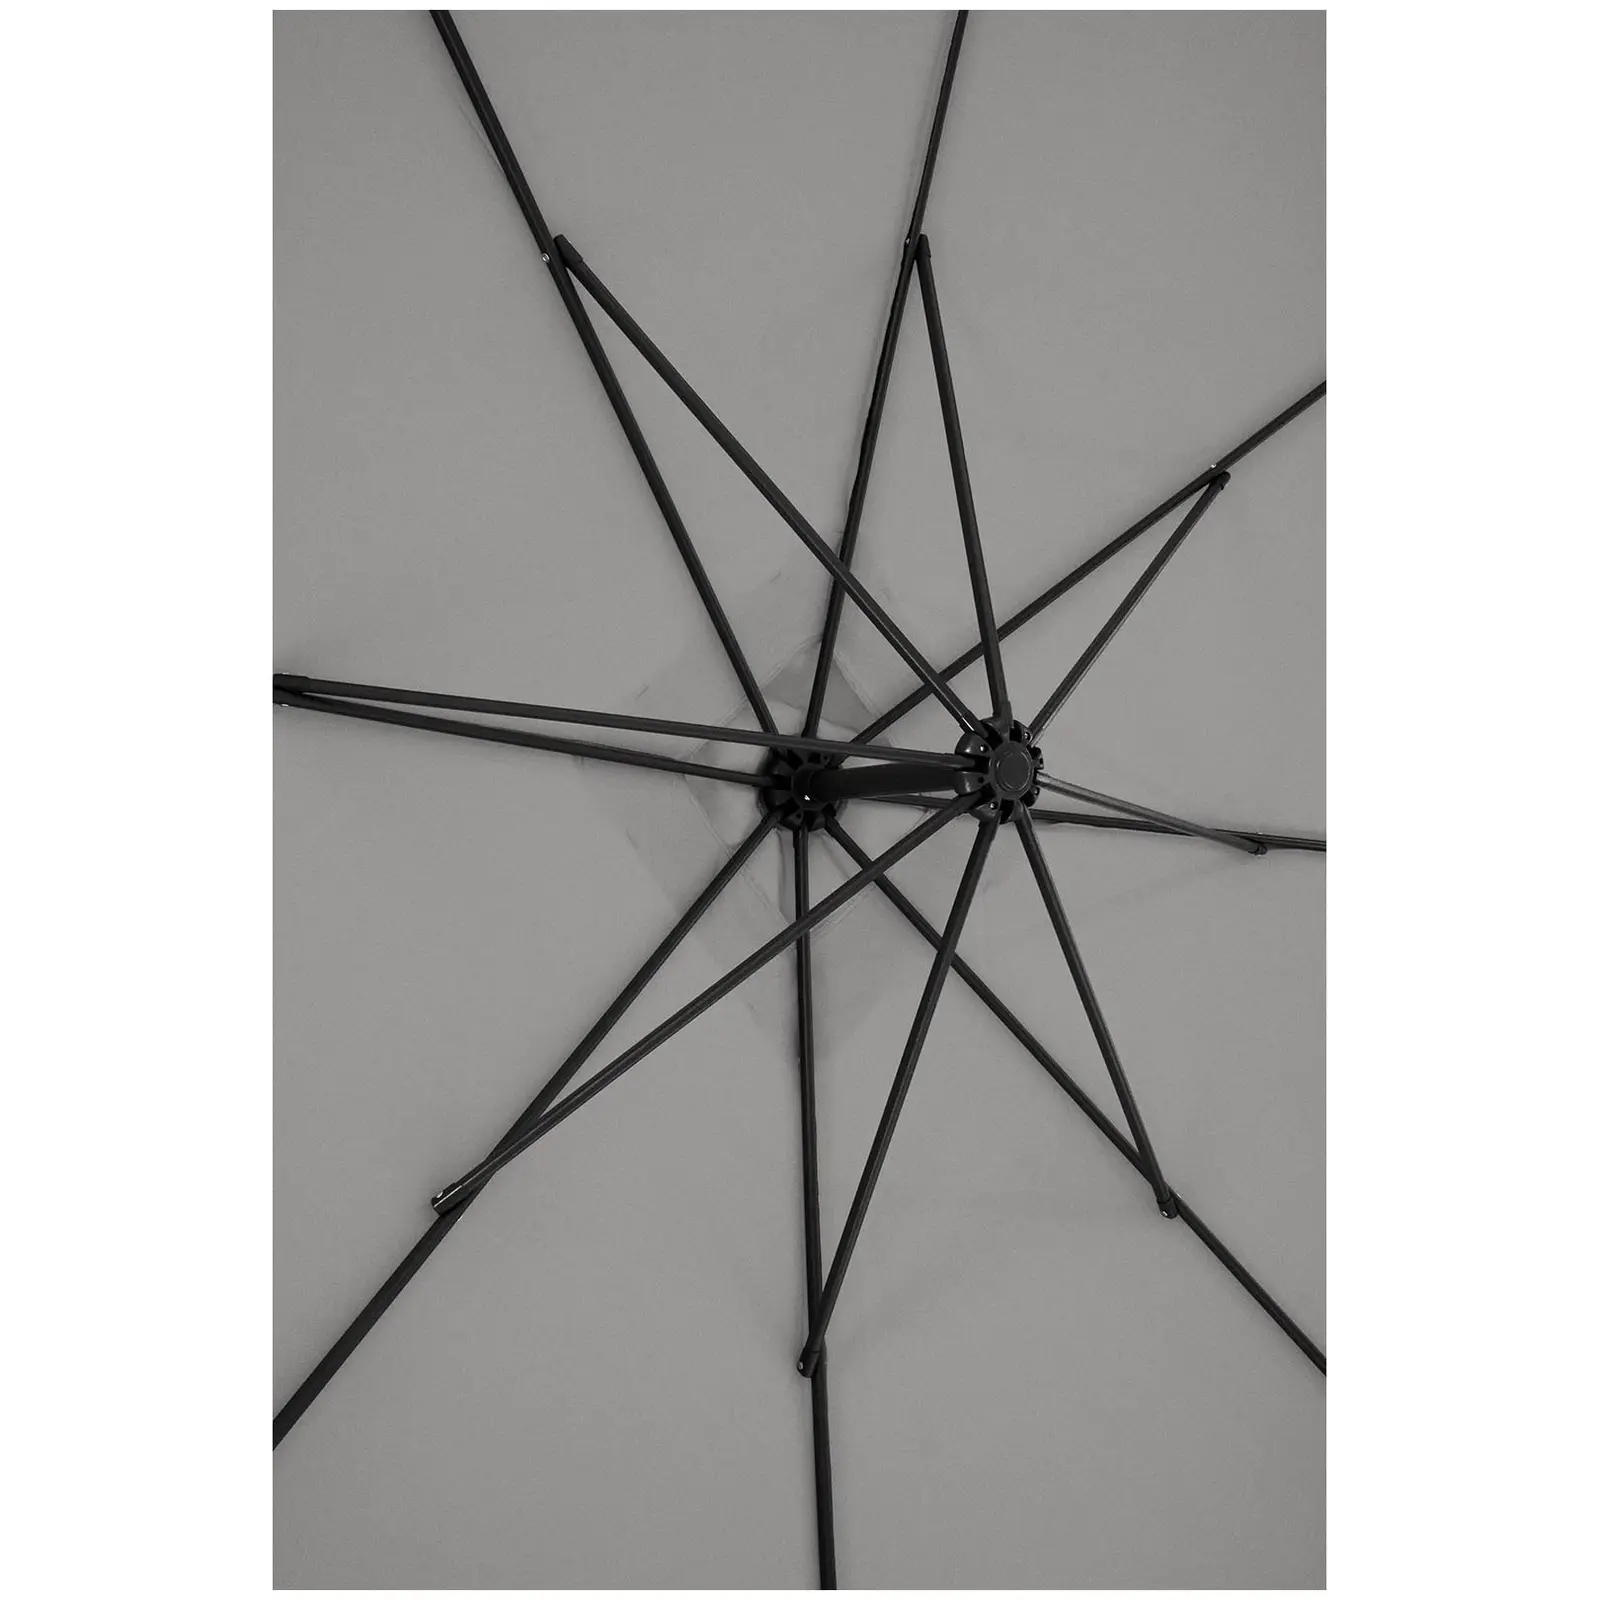 Andrahandssortering Hängparasoll - mörkgrått - fyrkantigt - 250 x 250 cm - kan lutas